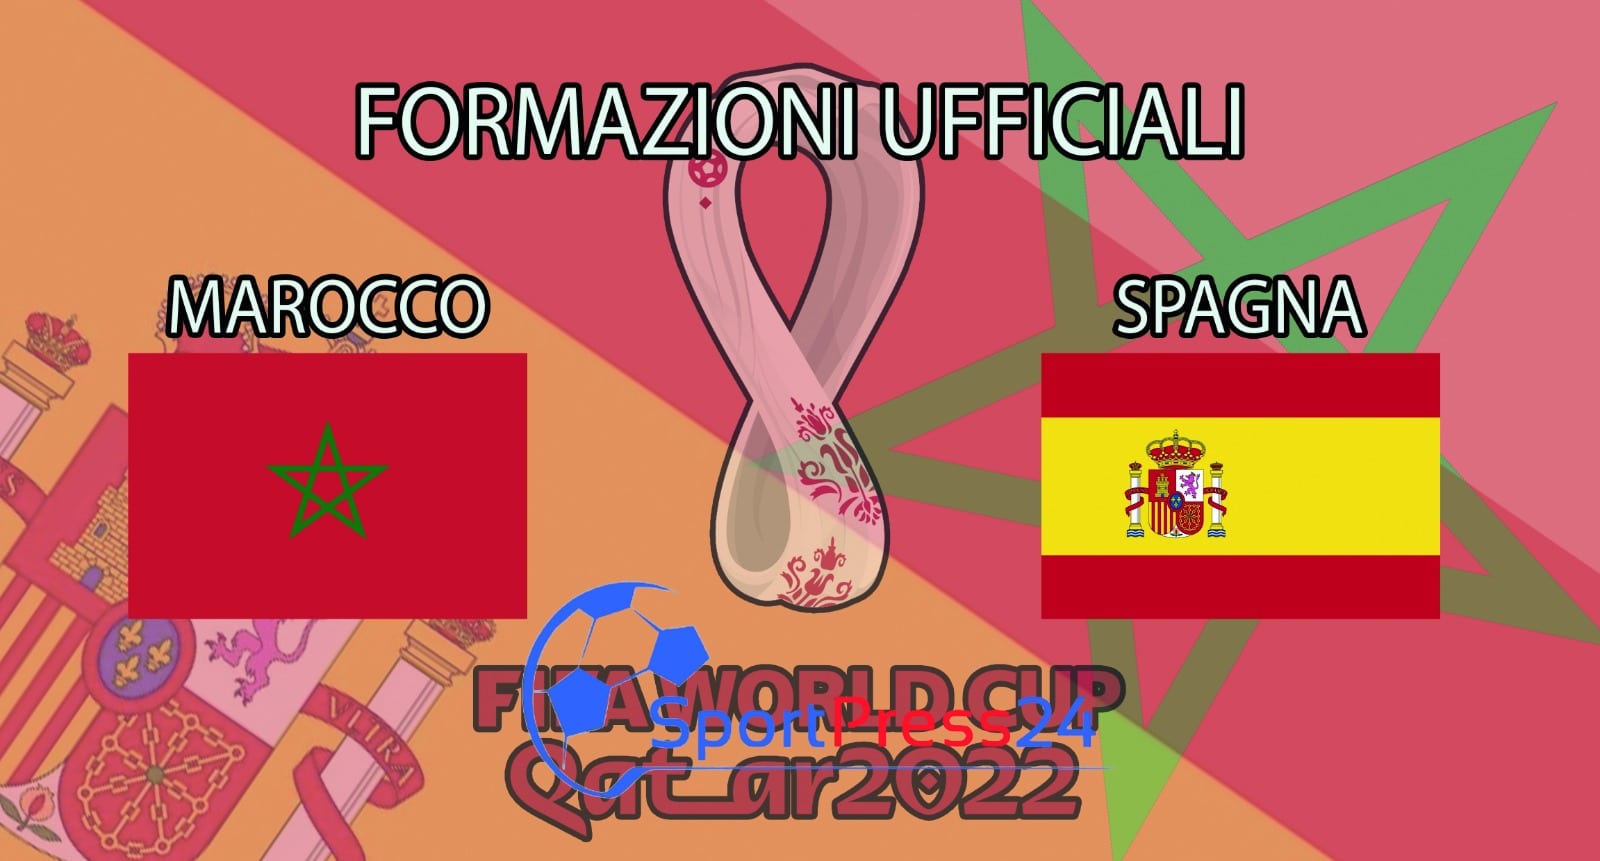 Qatar 2022, le formazioni ufficiali di Marocco-Spagna (Immagine a cura di Simone Sabatino)